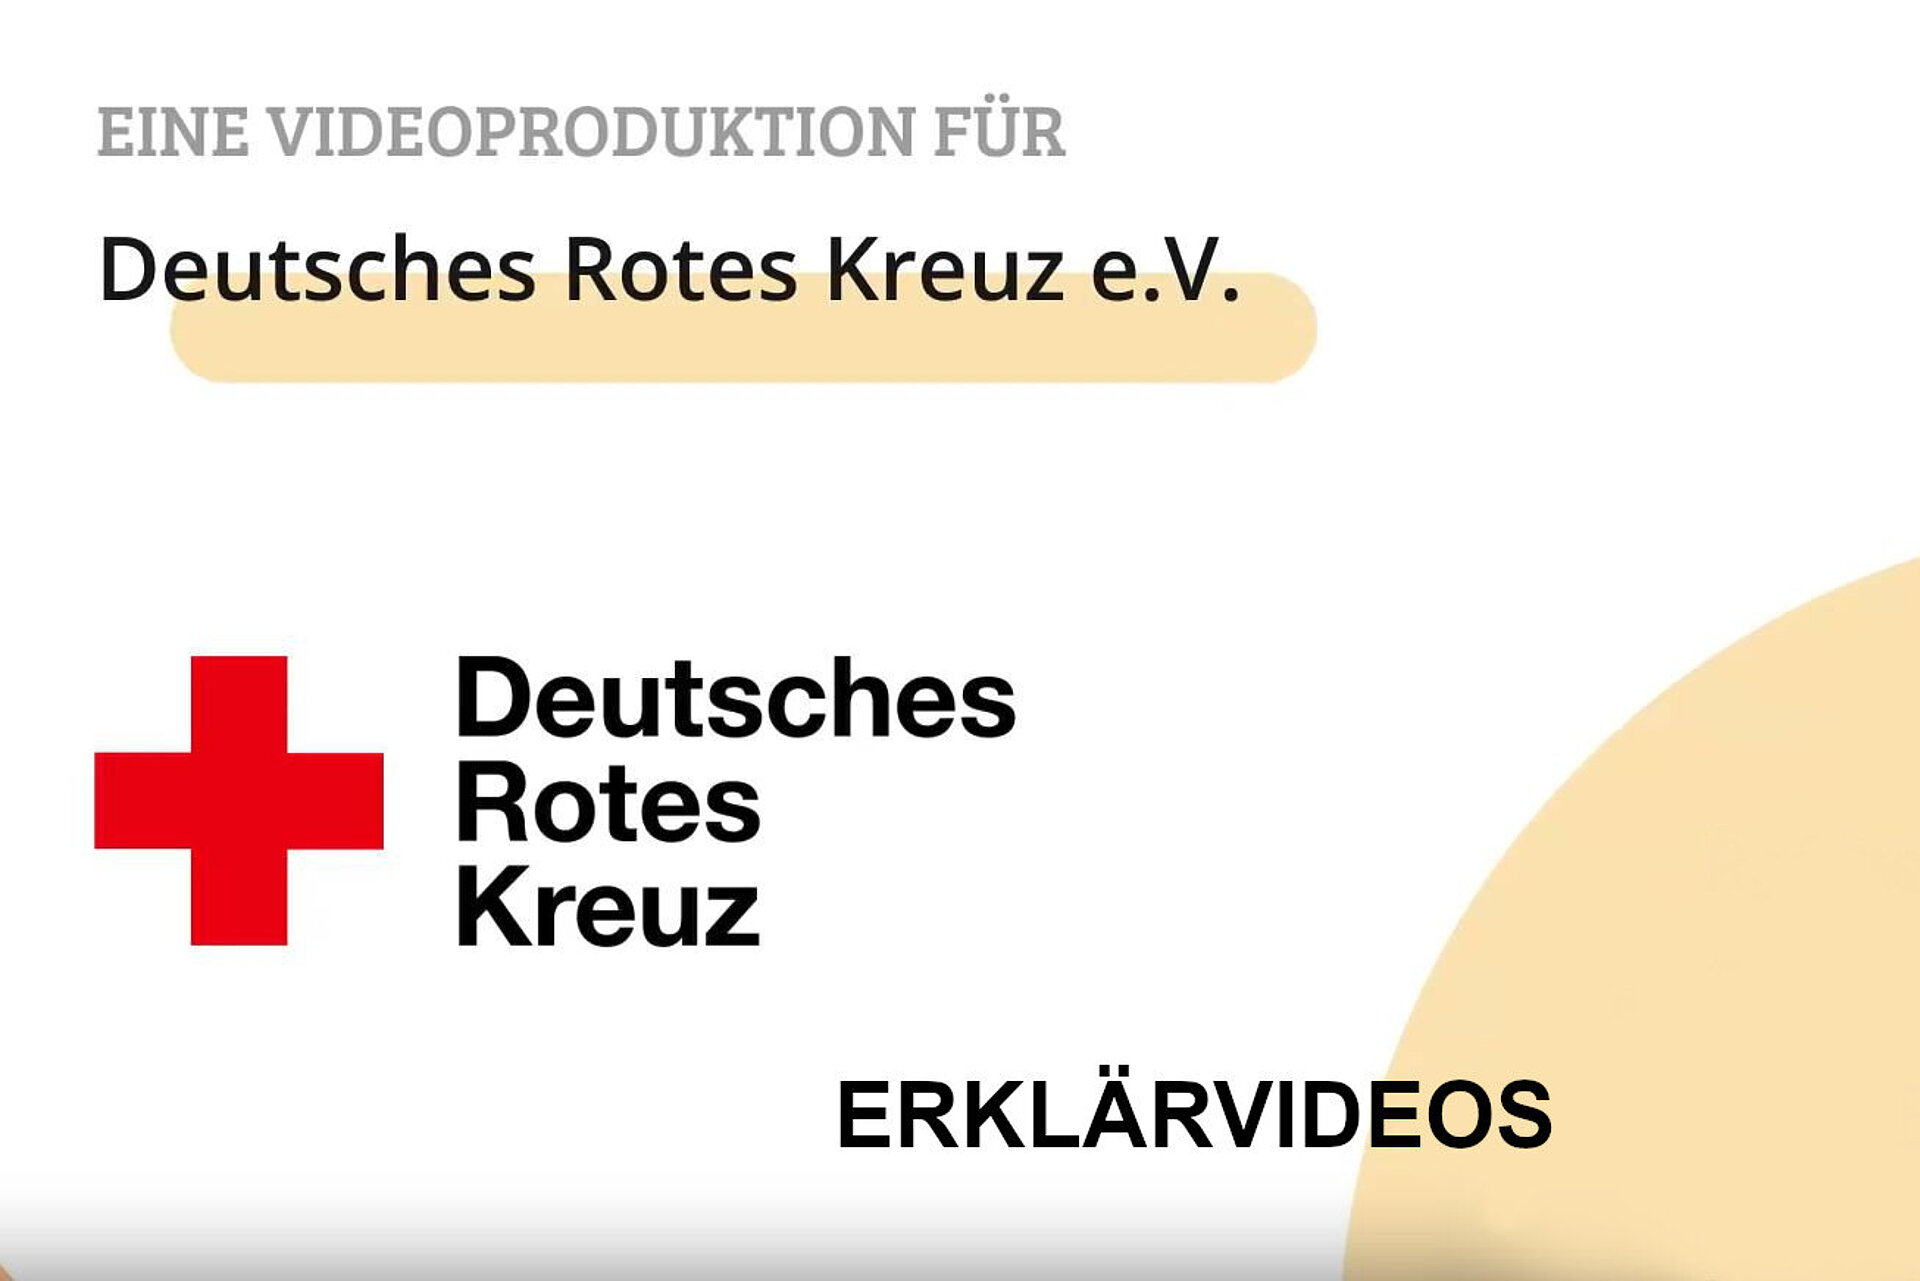 SCreenshot vom Beginn der Erklärvideos. Enthält nur Text: "Eine Videoproduktion für Deutsches Rotes Kreuz e.V.", gefolgt vom Logo des DRK mit Schriftzug und dem Wort "Erklärvideos"